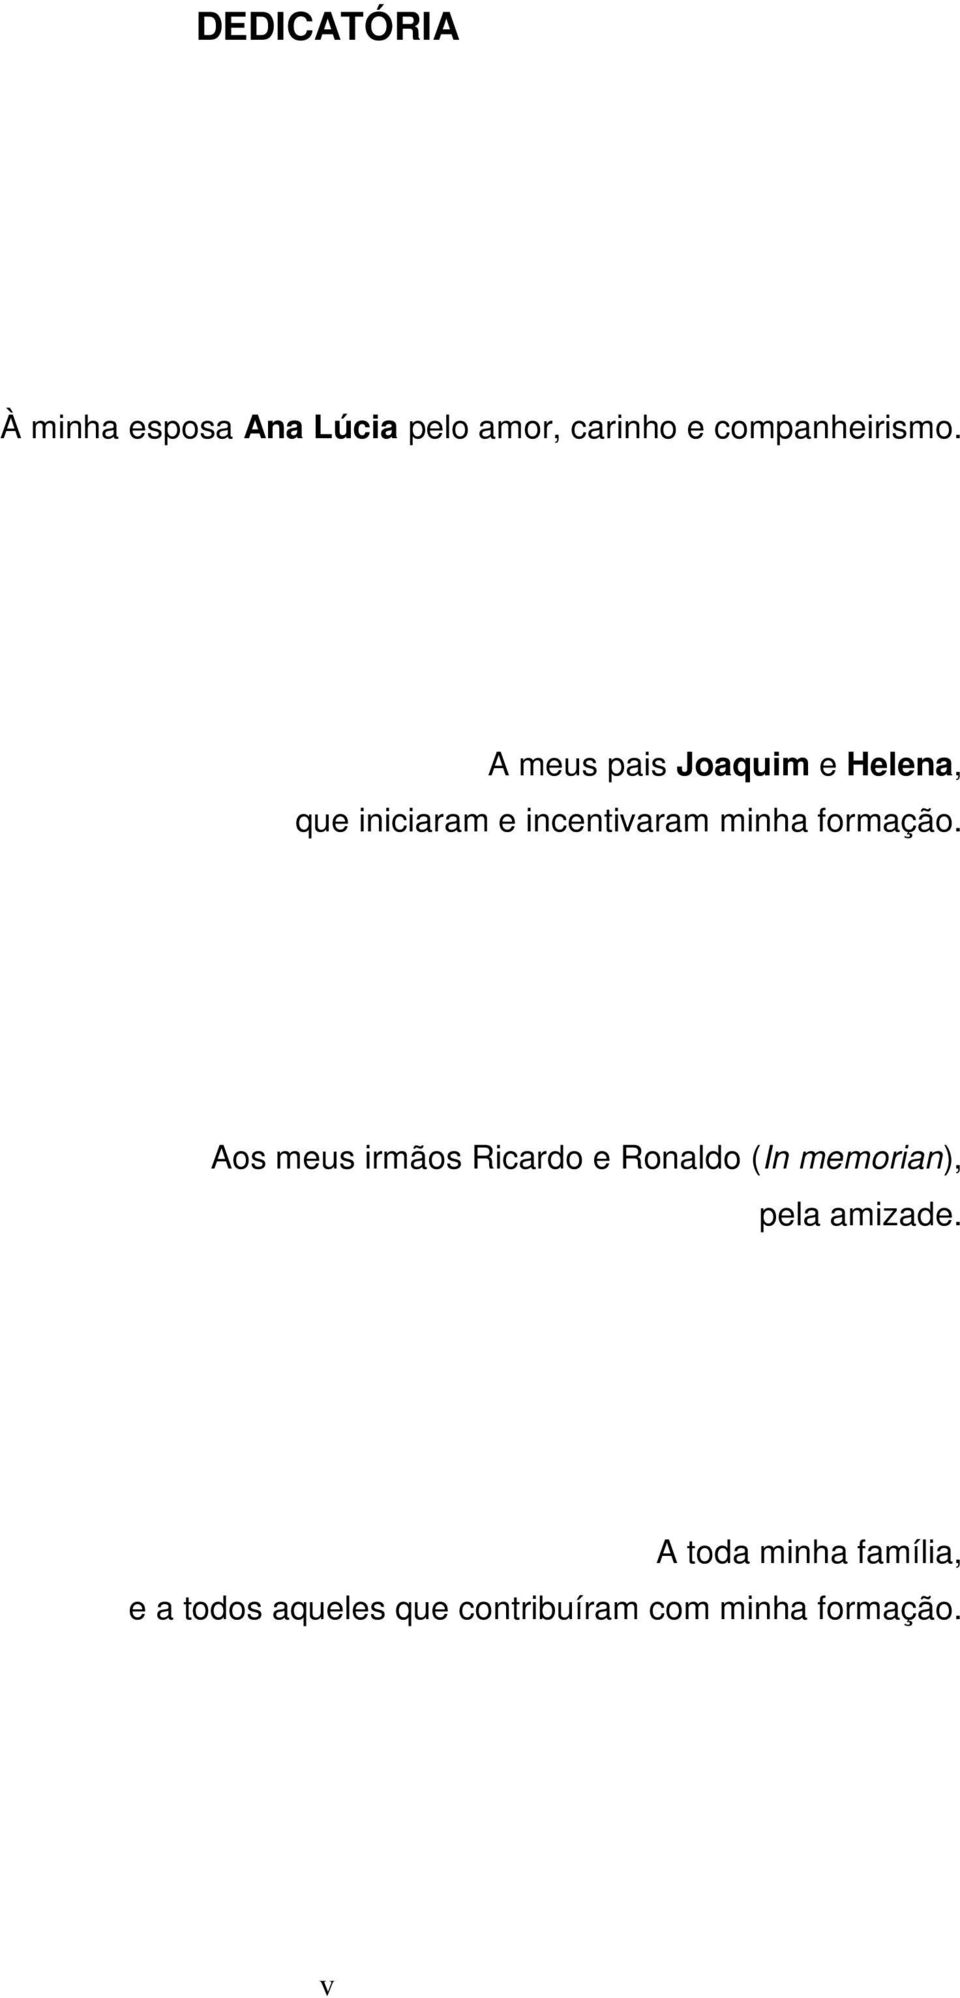 formação. Aos meus irmãos Ricardo e Ronaldo (In memorian), pela amizade.